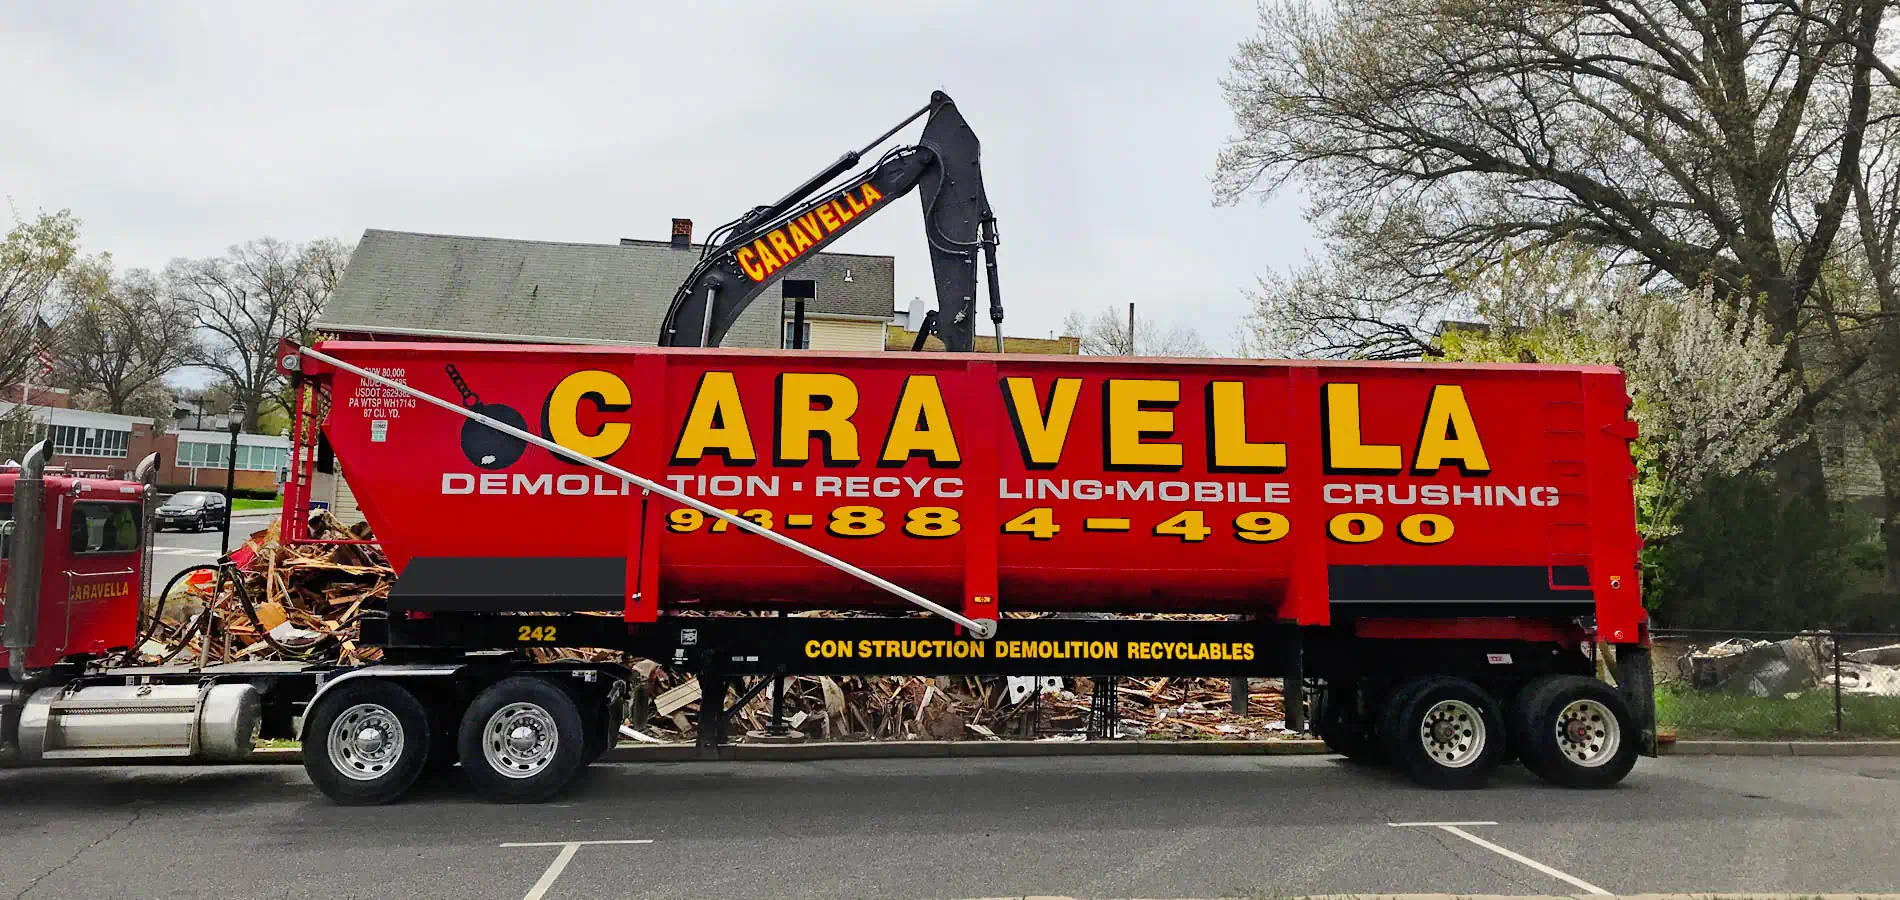 Demolition Services in Morris County, NJ | Caravella Demolition